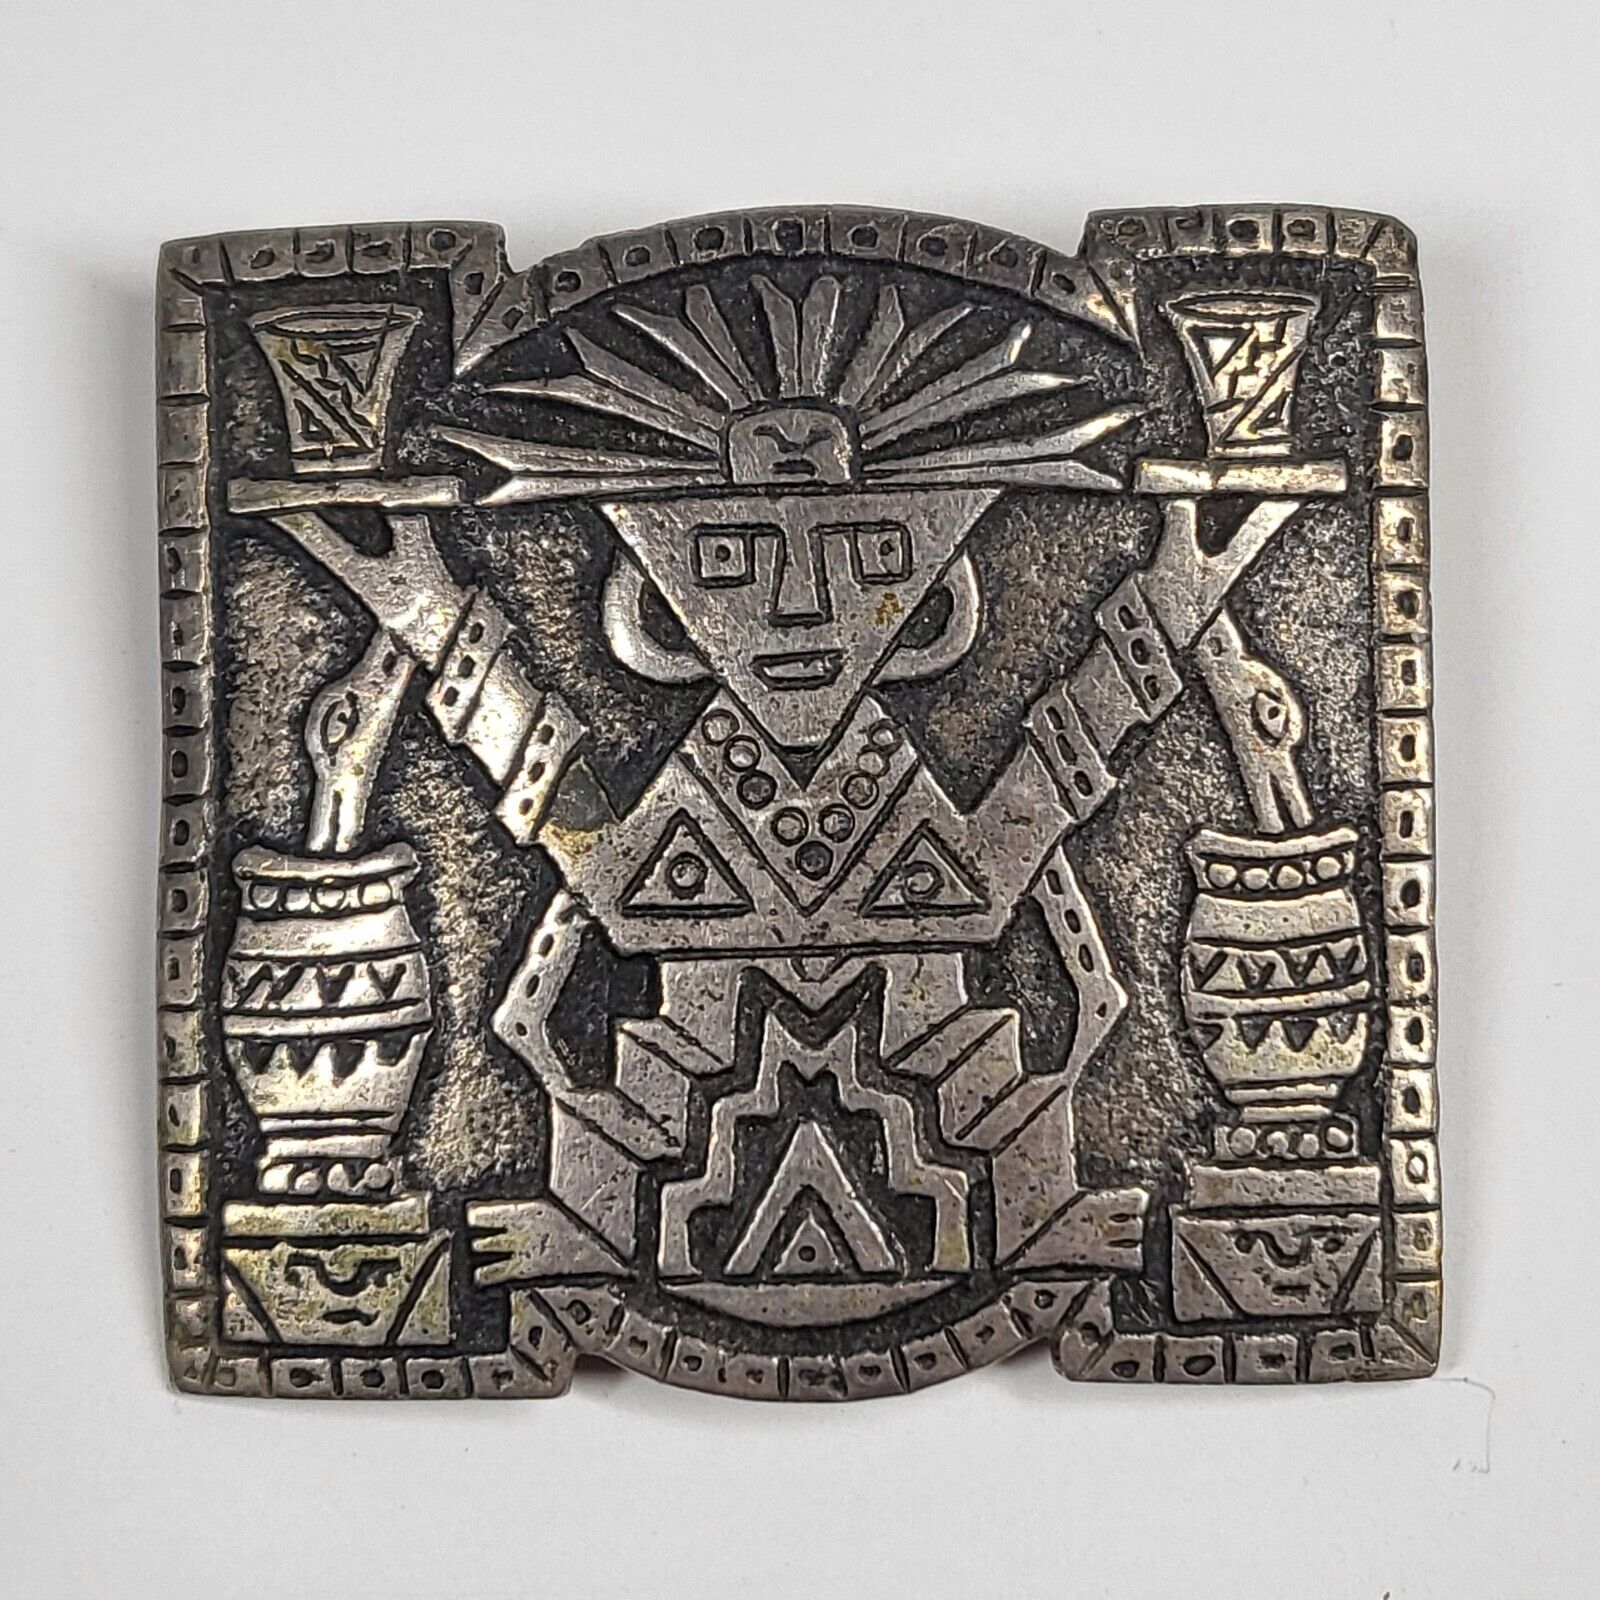 Peru 900 Silver Pin Badge Brooch Vintage Inca Aztec Peruvian